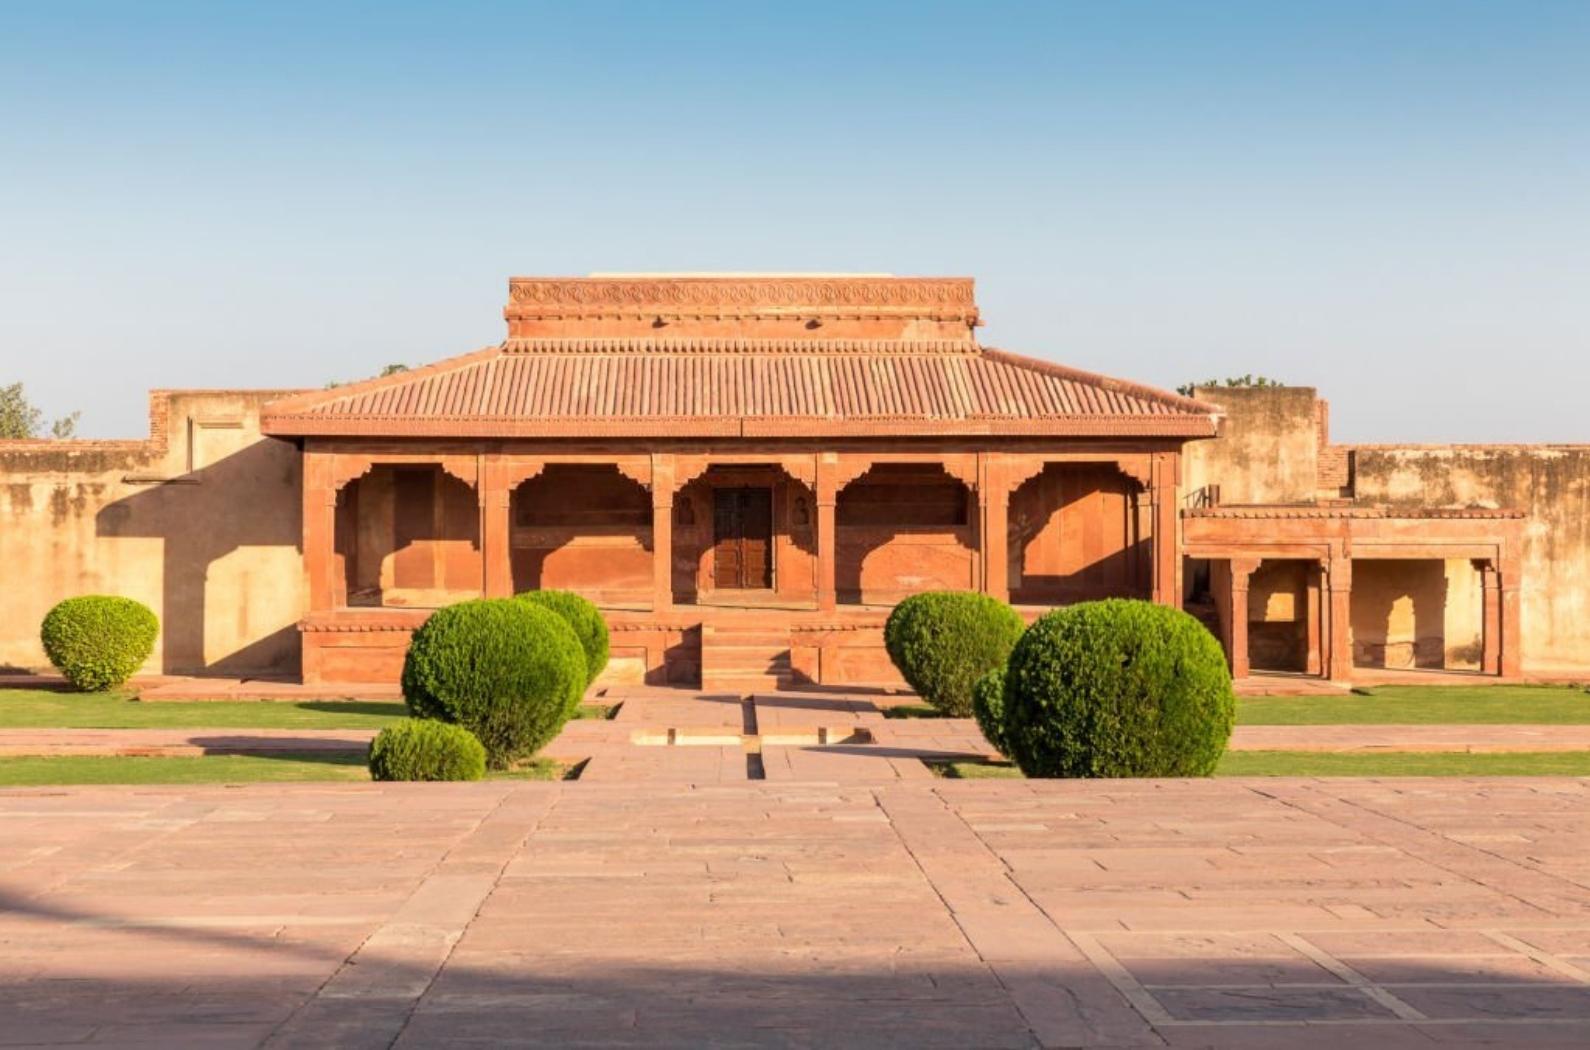 Beautiful view of Jodha Bai's Palace